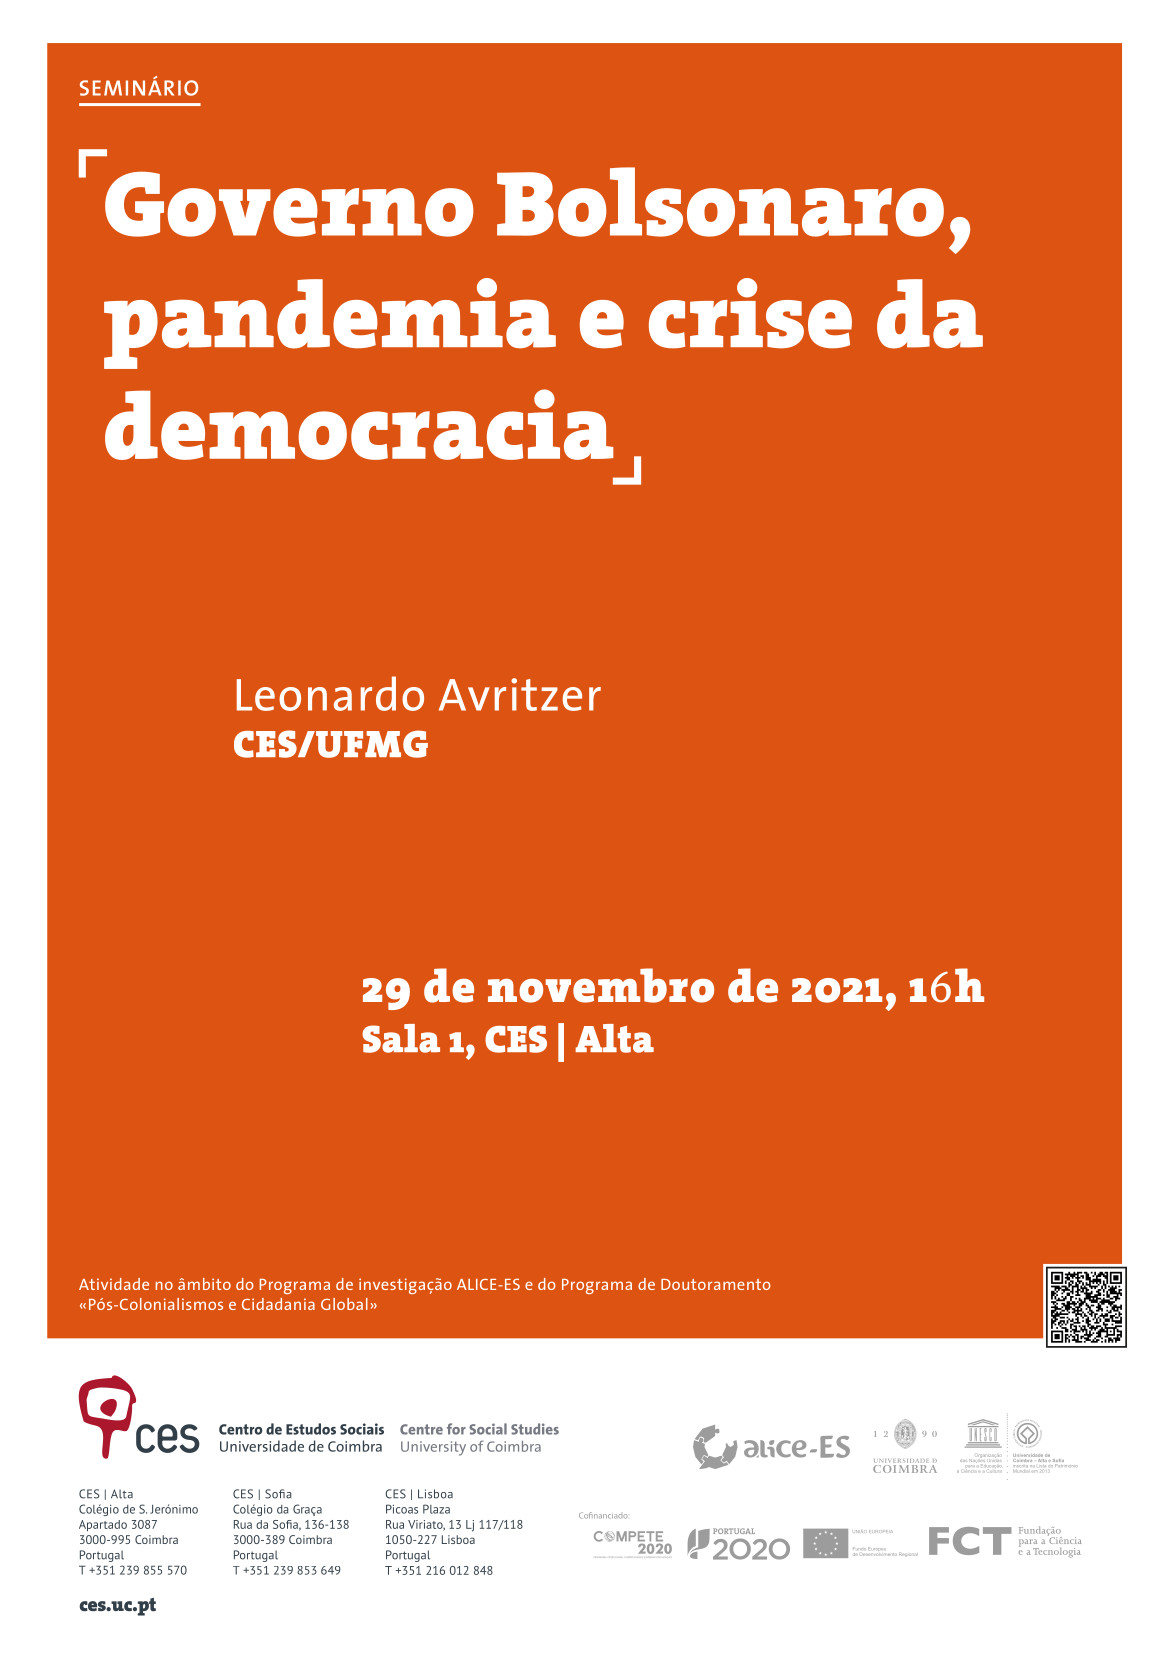 Governo Bolsonaro, pandemia e crise da democracia<span id="edit_36034"><script>$(function() { $('#edit_36034').load( "/myces/user/editobj.php?tipo=evento&id=36034" ); });</script></span>